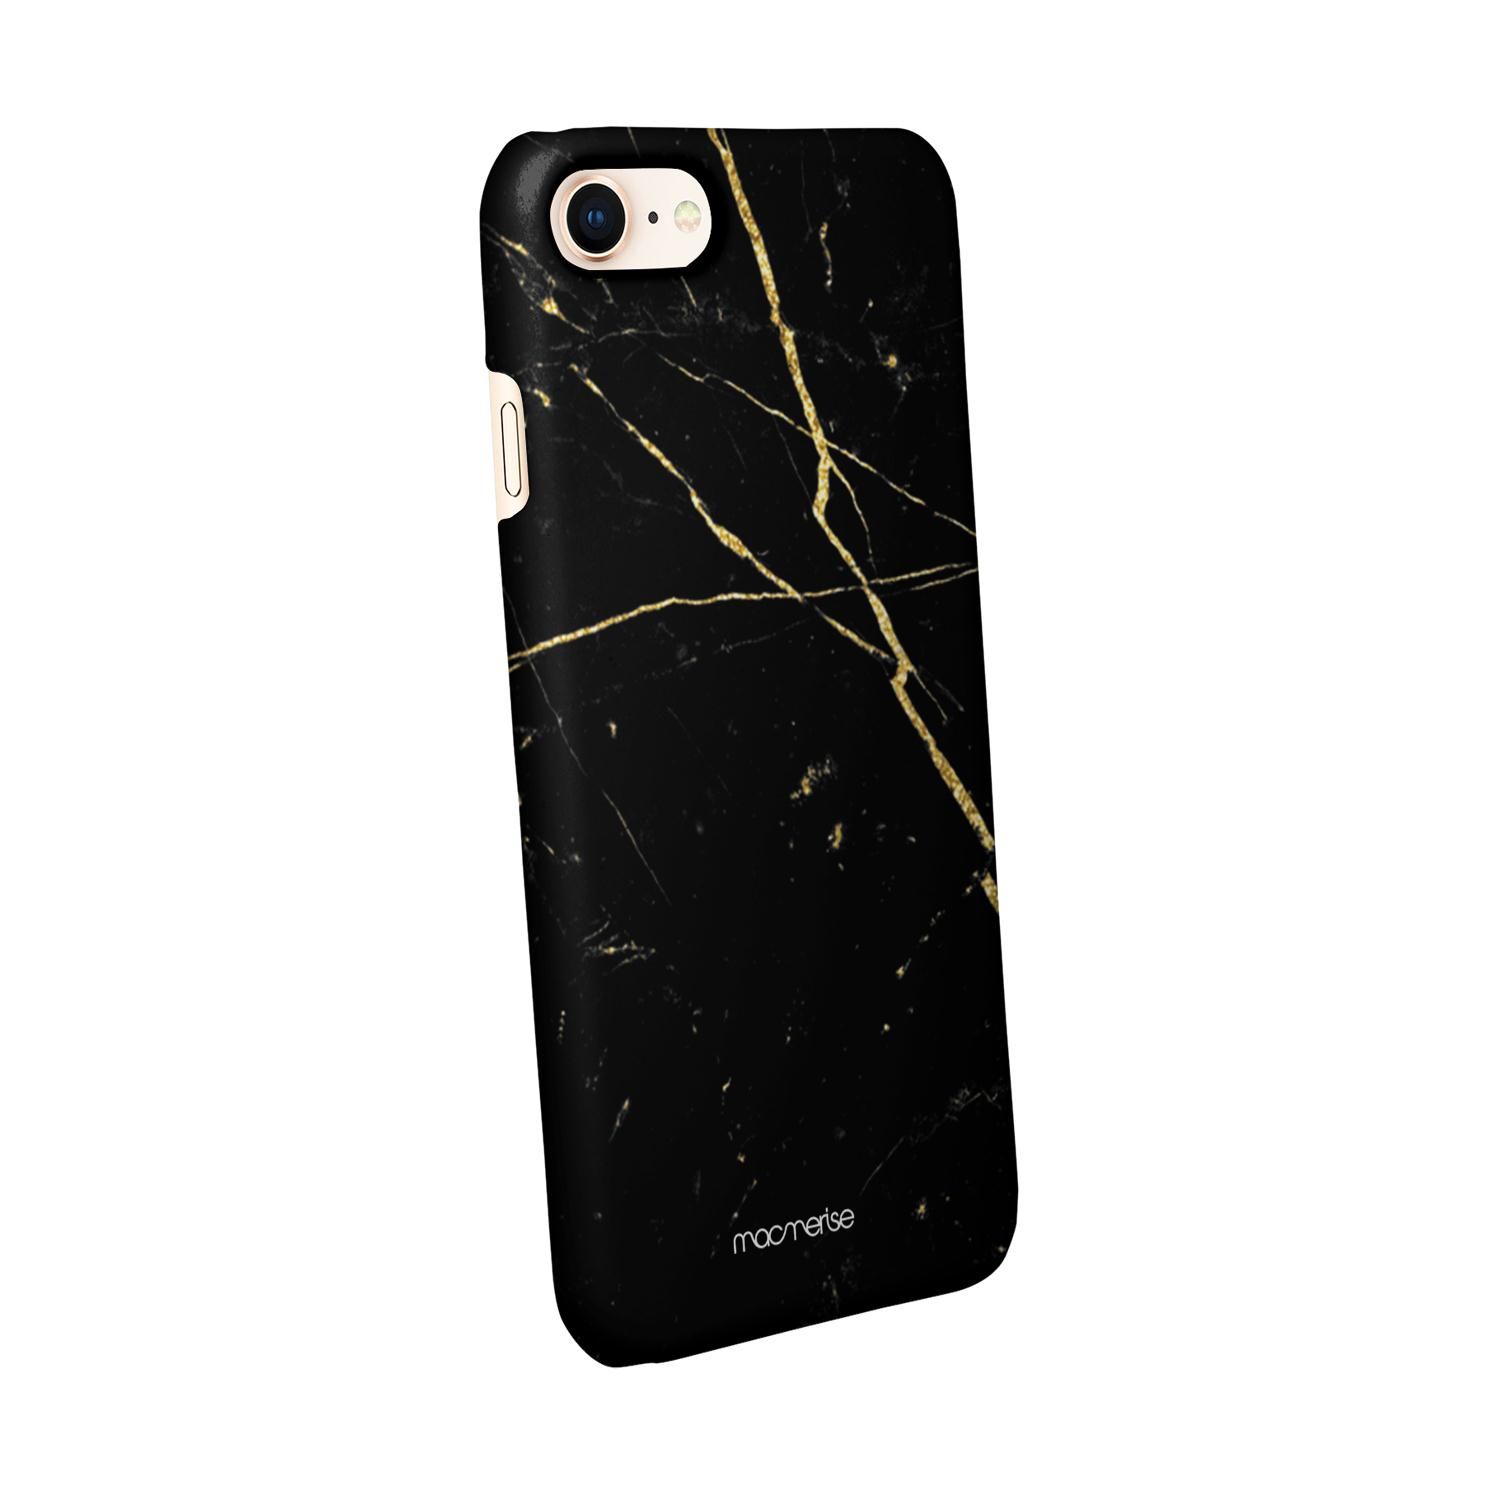 Buy Marble Black Onyx - Sleek Phone Case for iPhone 8 Online